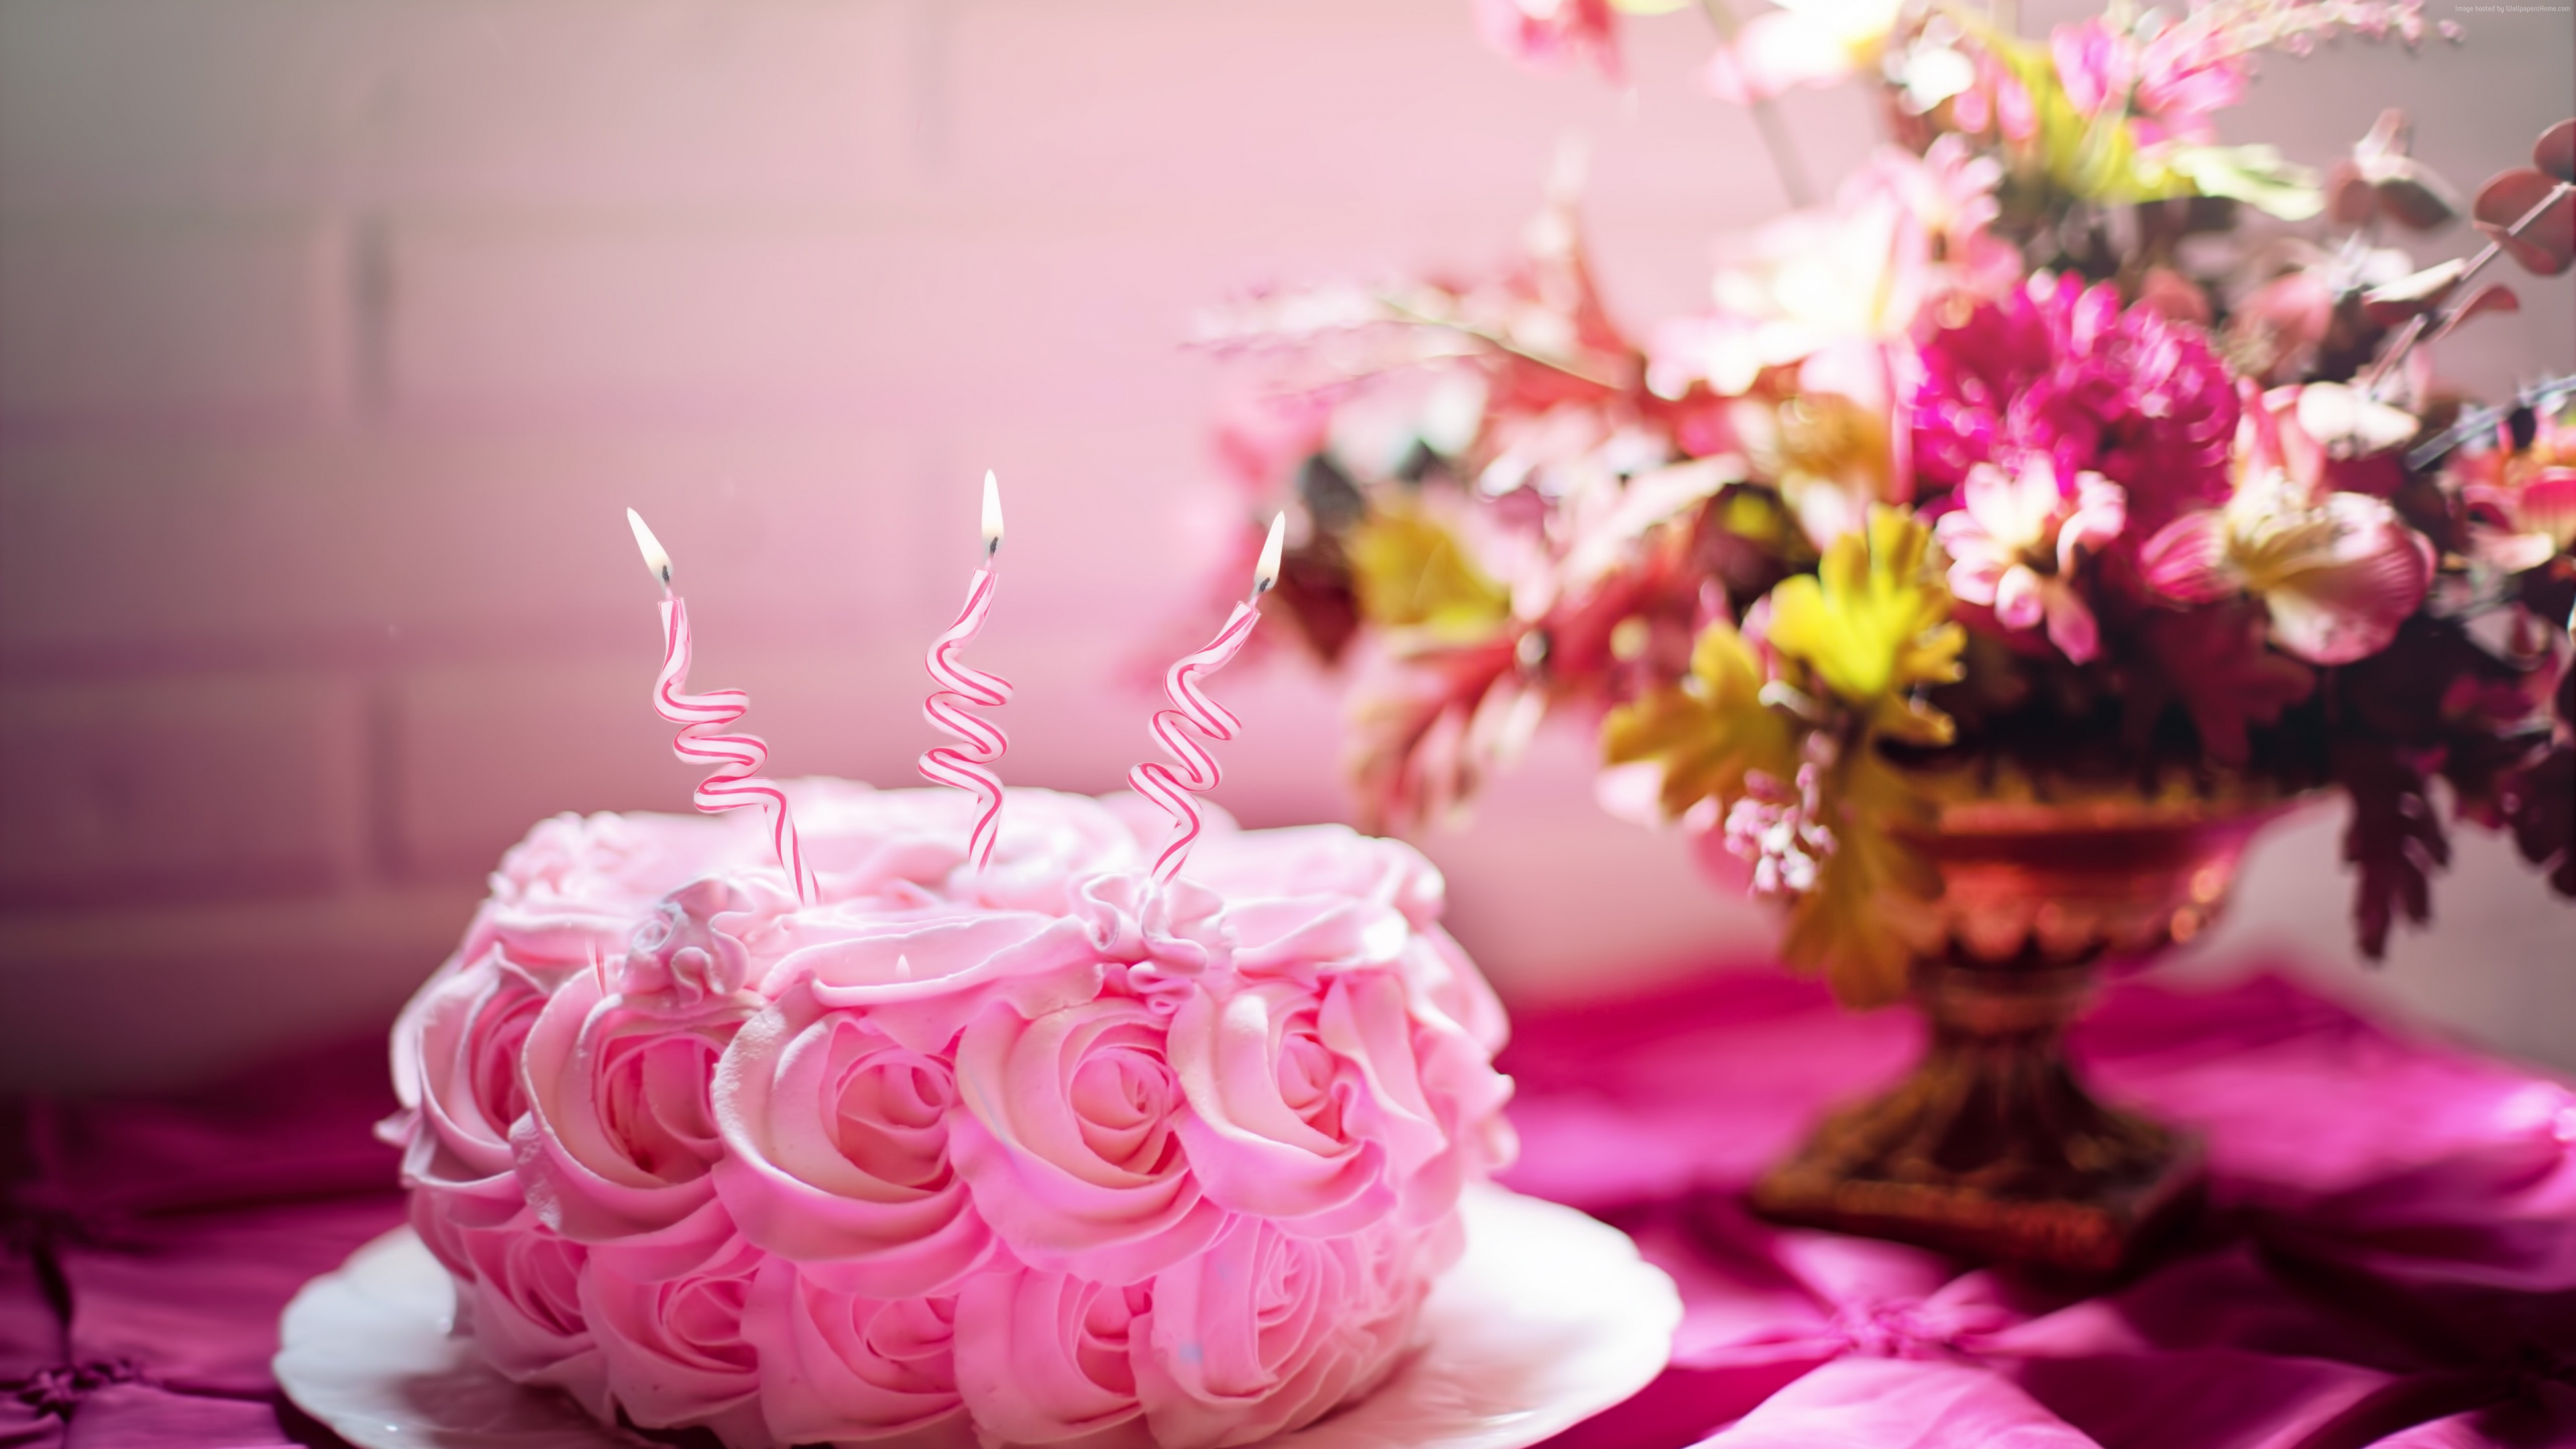 结冰, 生日蛋糕, 蛋糕装饰, 粉红色, 甜头 壁纸 3840x2160 允许